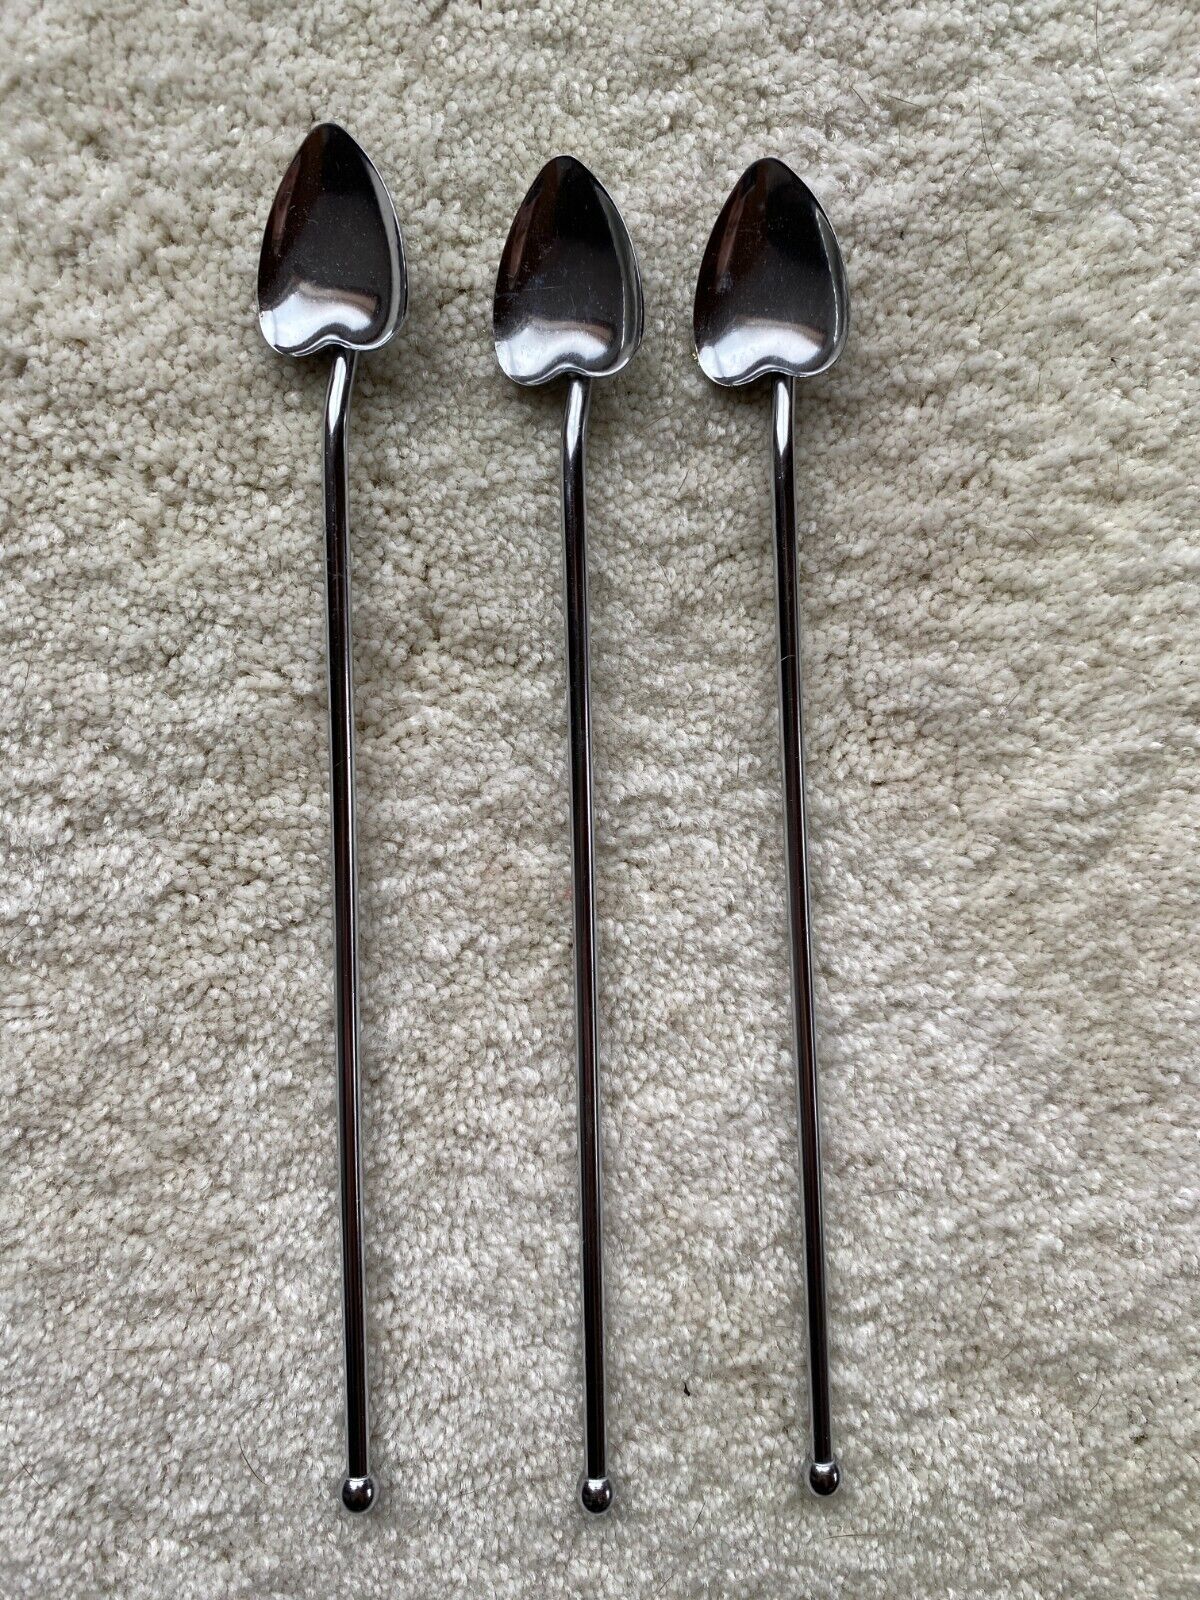 Vintage 3 Silverplated Italian Heart Spade Drink Stir Spoons Barware